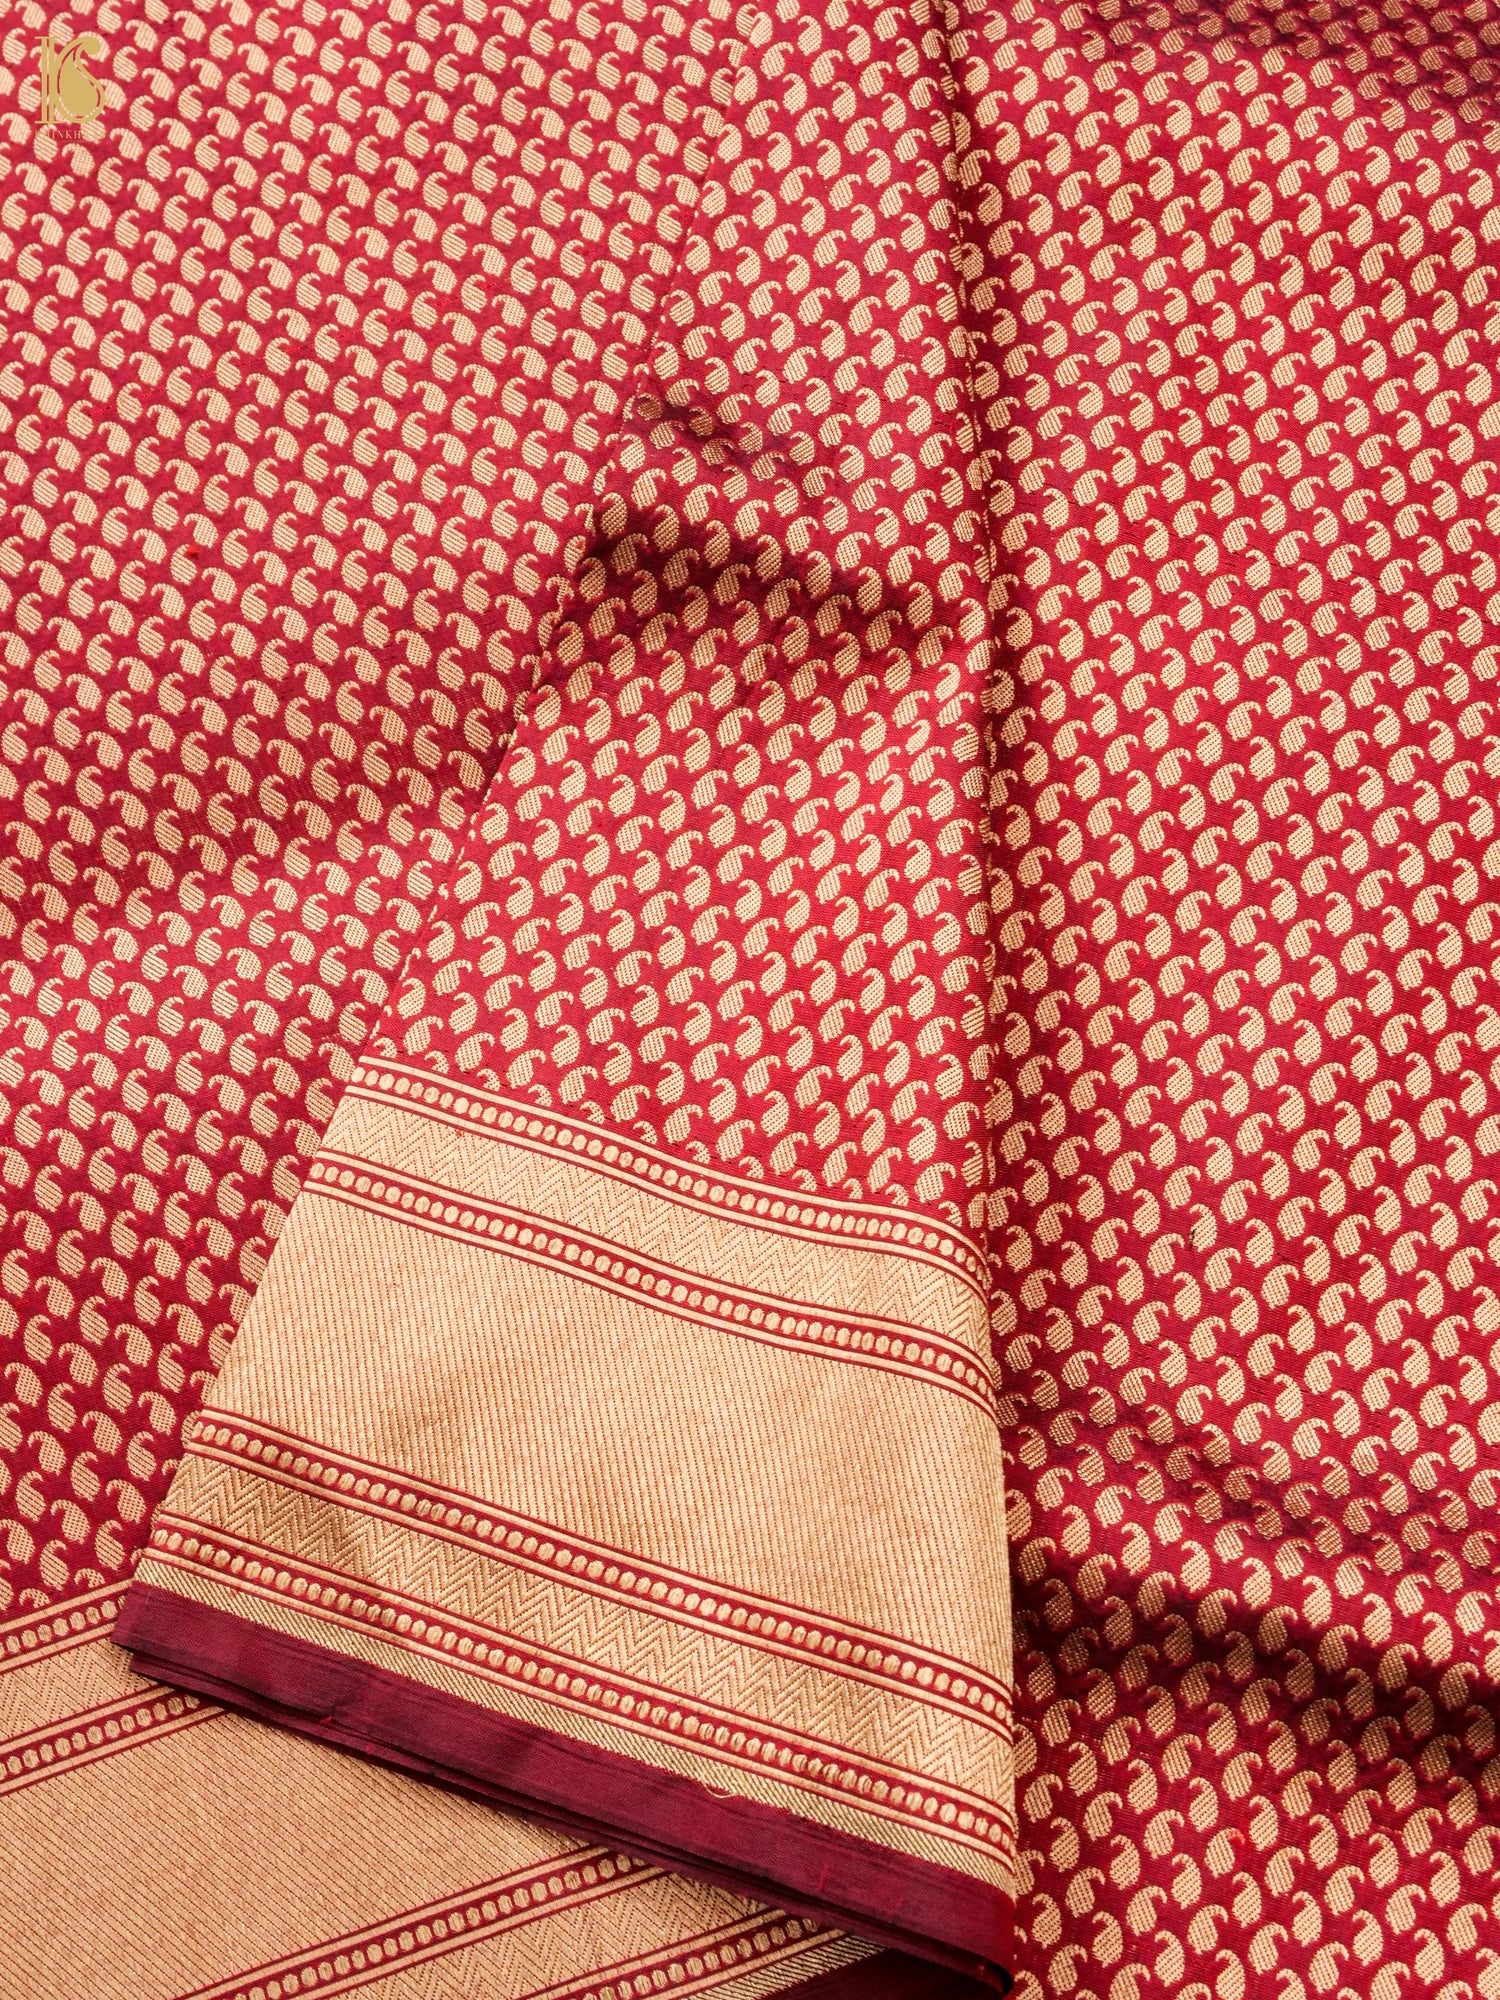 Handloom Banarasi Silk Zari Tanchoi Saree